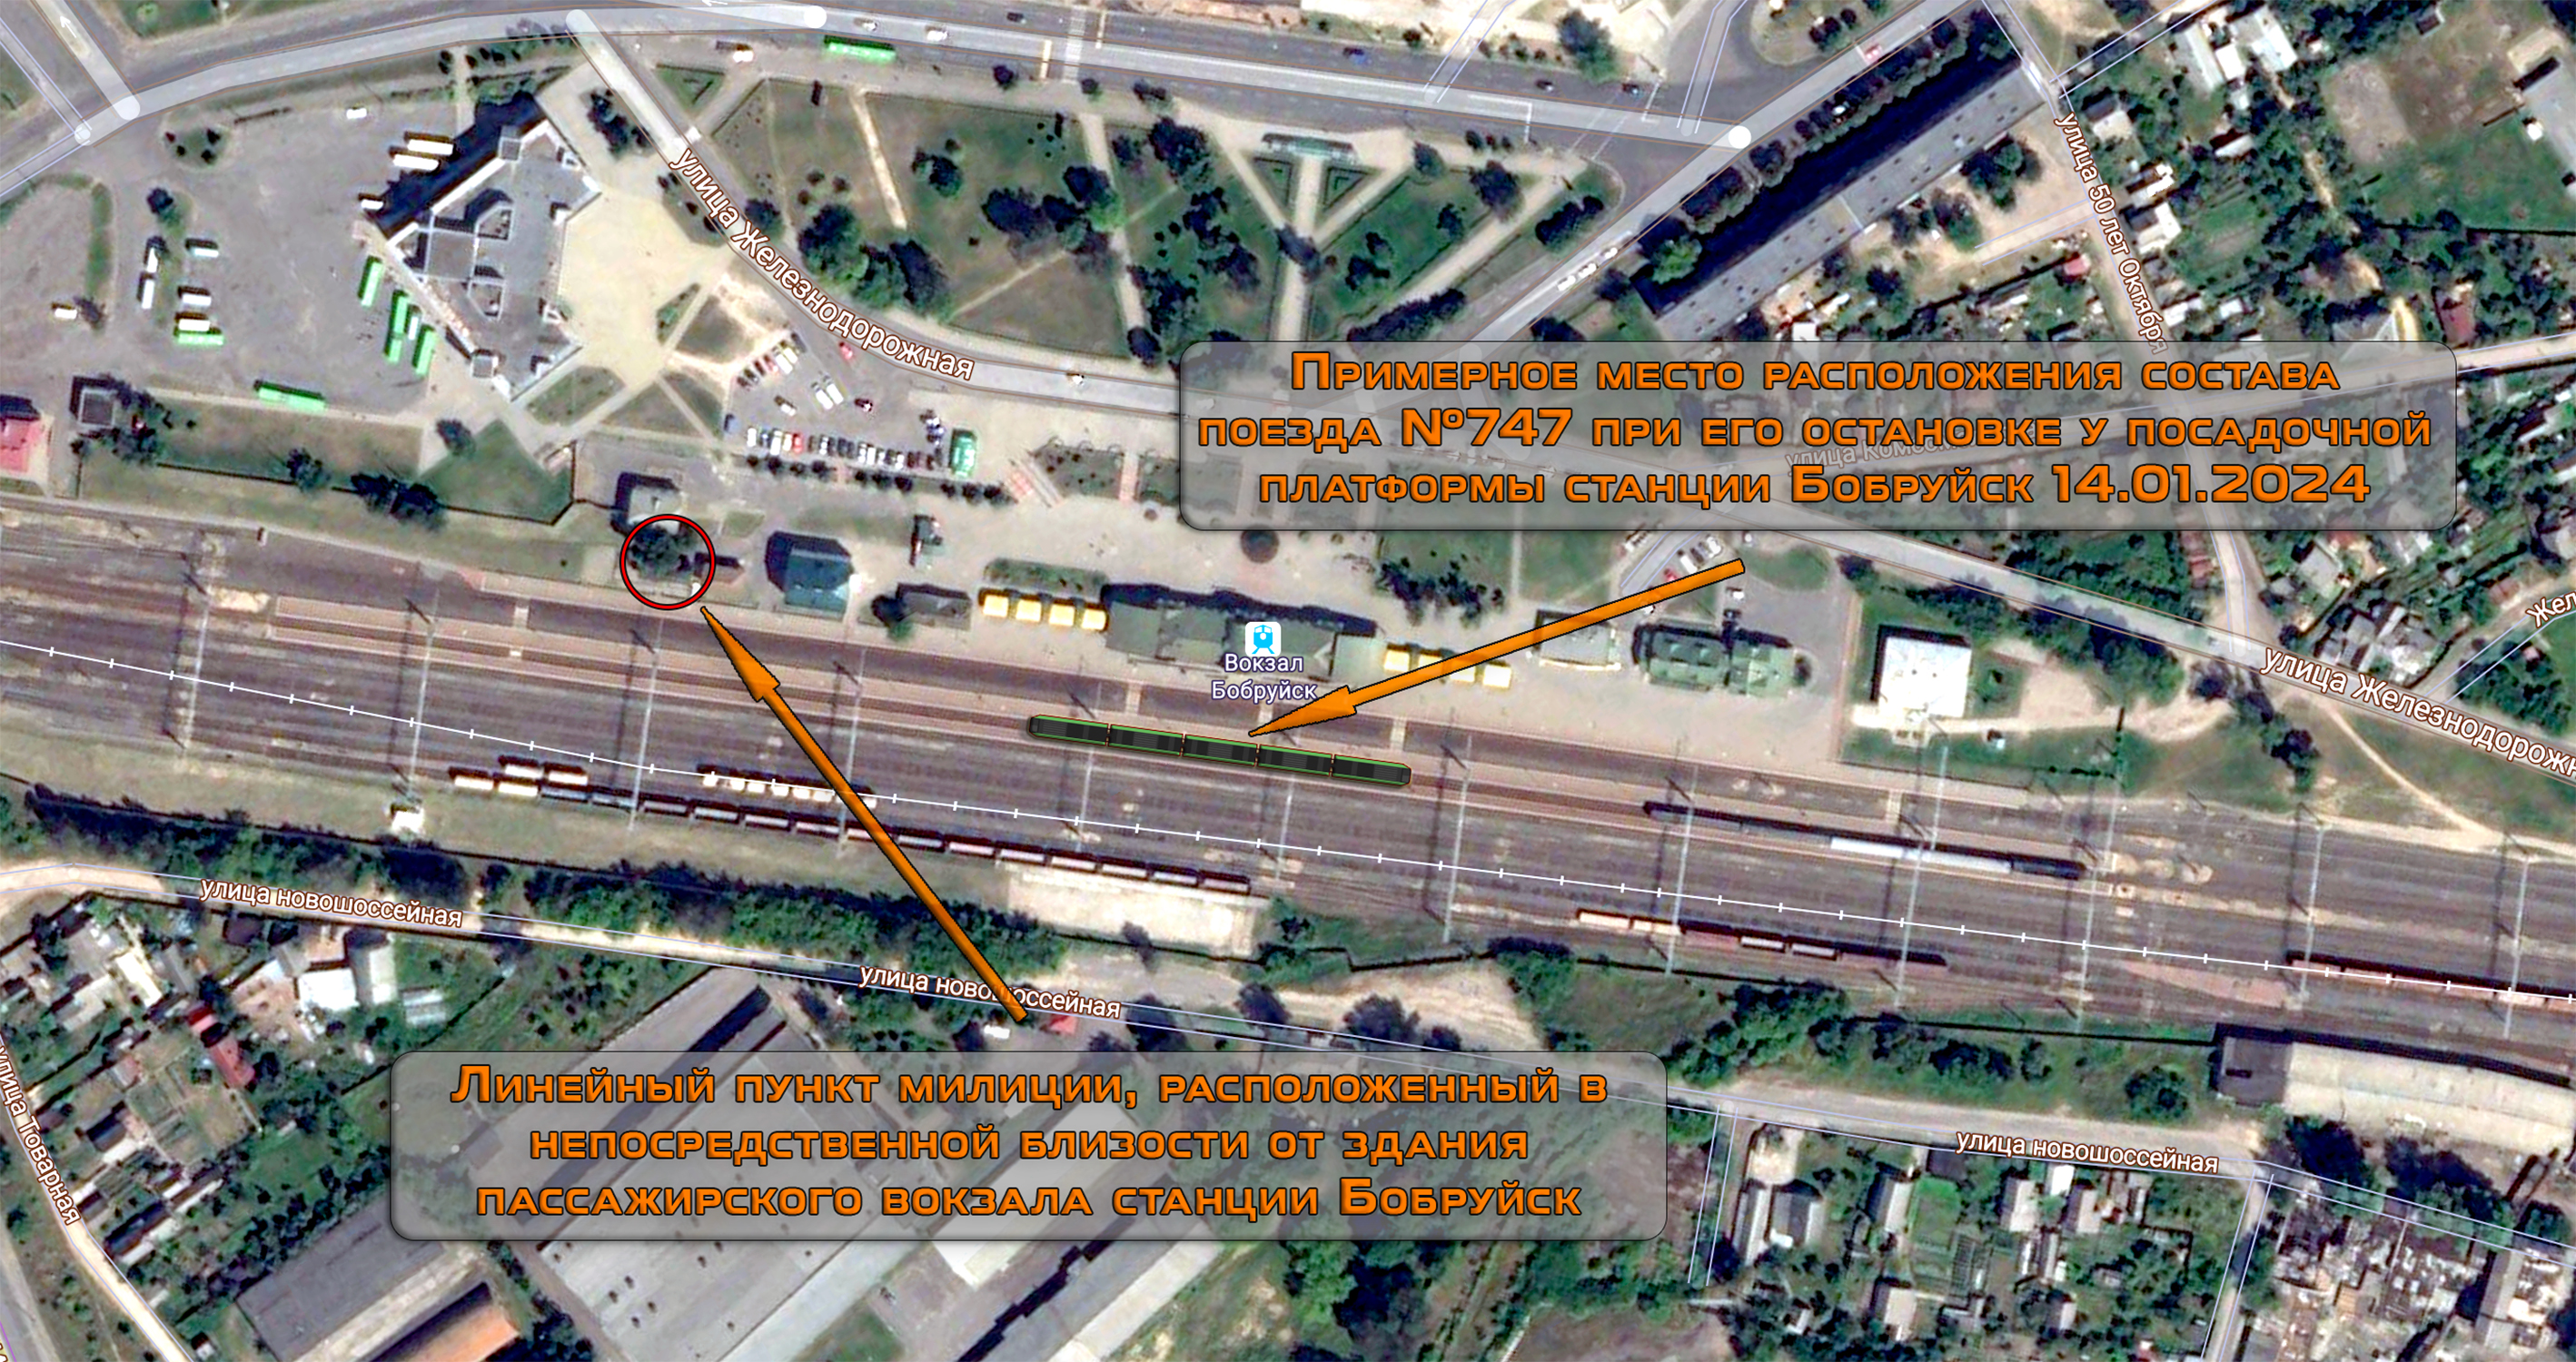 Примерное схематическое изображение расположения состава поезда №747 относительно здания опорного пункта милиции на станции Бобруйск